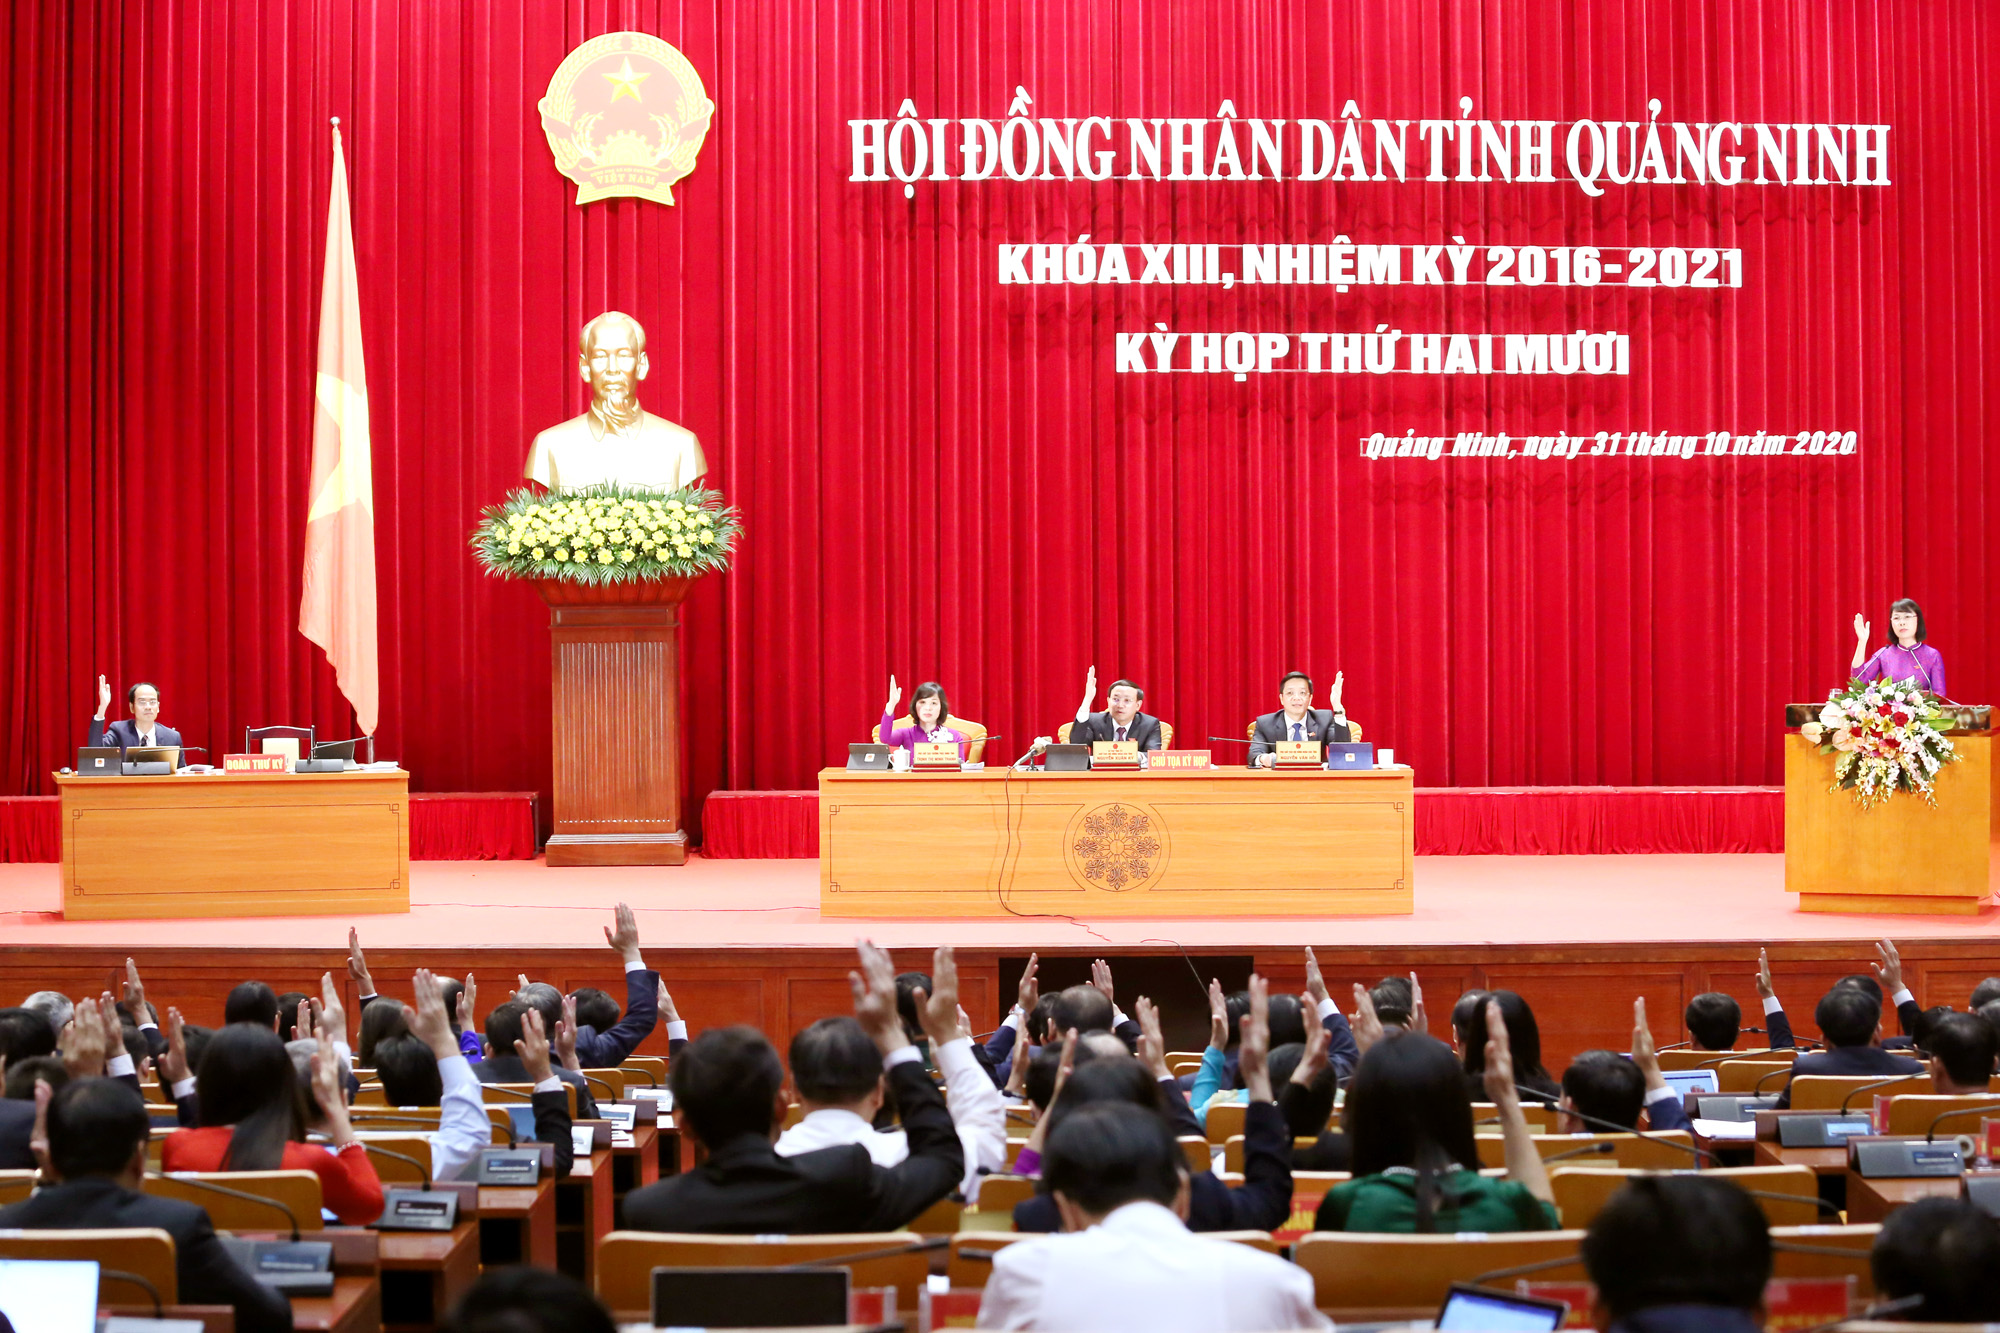 Kỳ họp thứ 20 (kỳ họp chuyên đề) của HĐND tỉnh khóa XIII, nhiệm kỳ 2016-2021